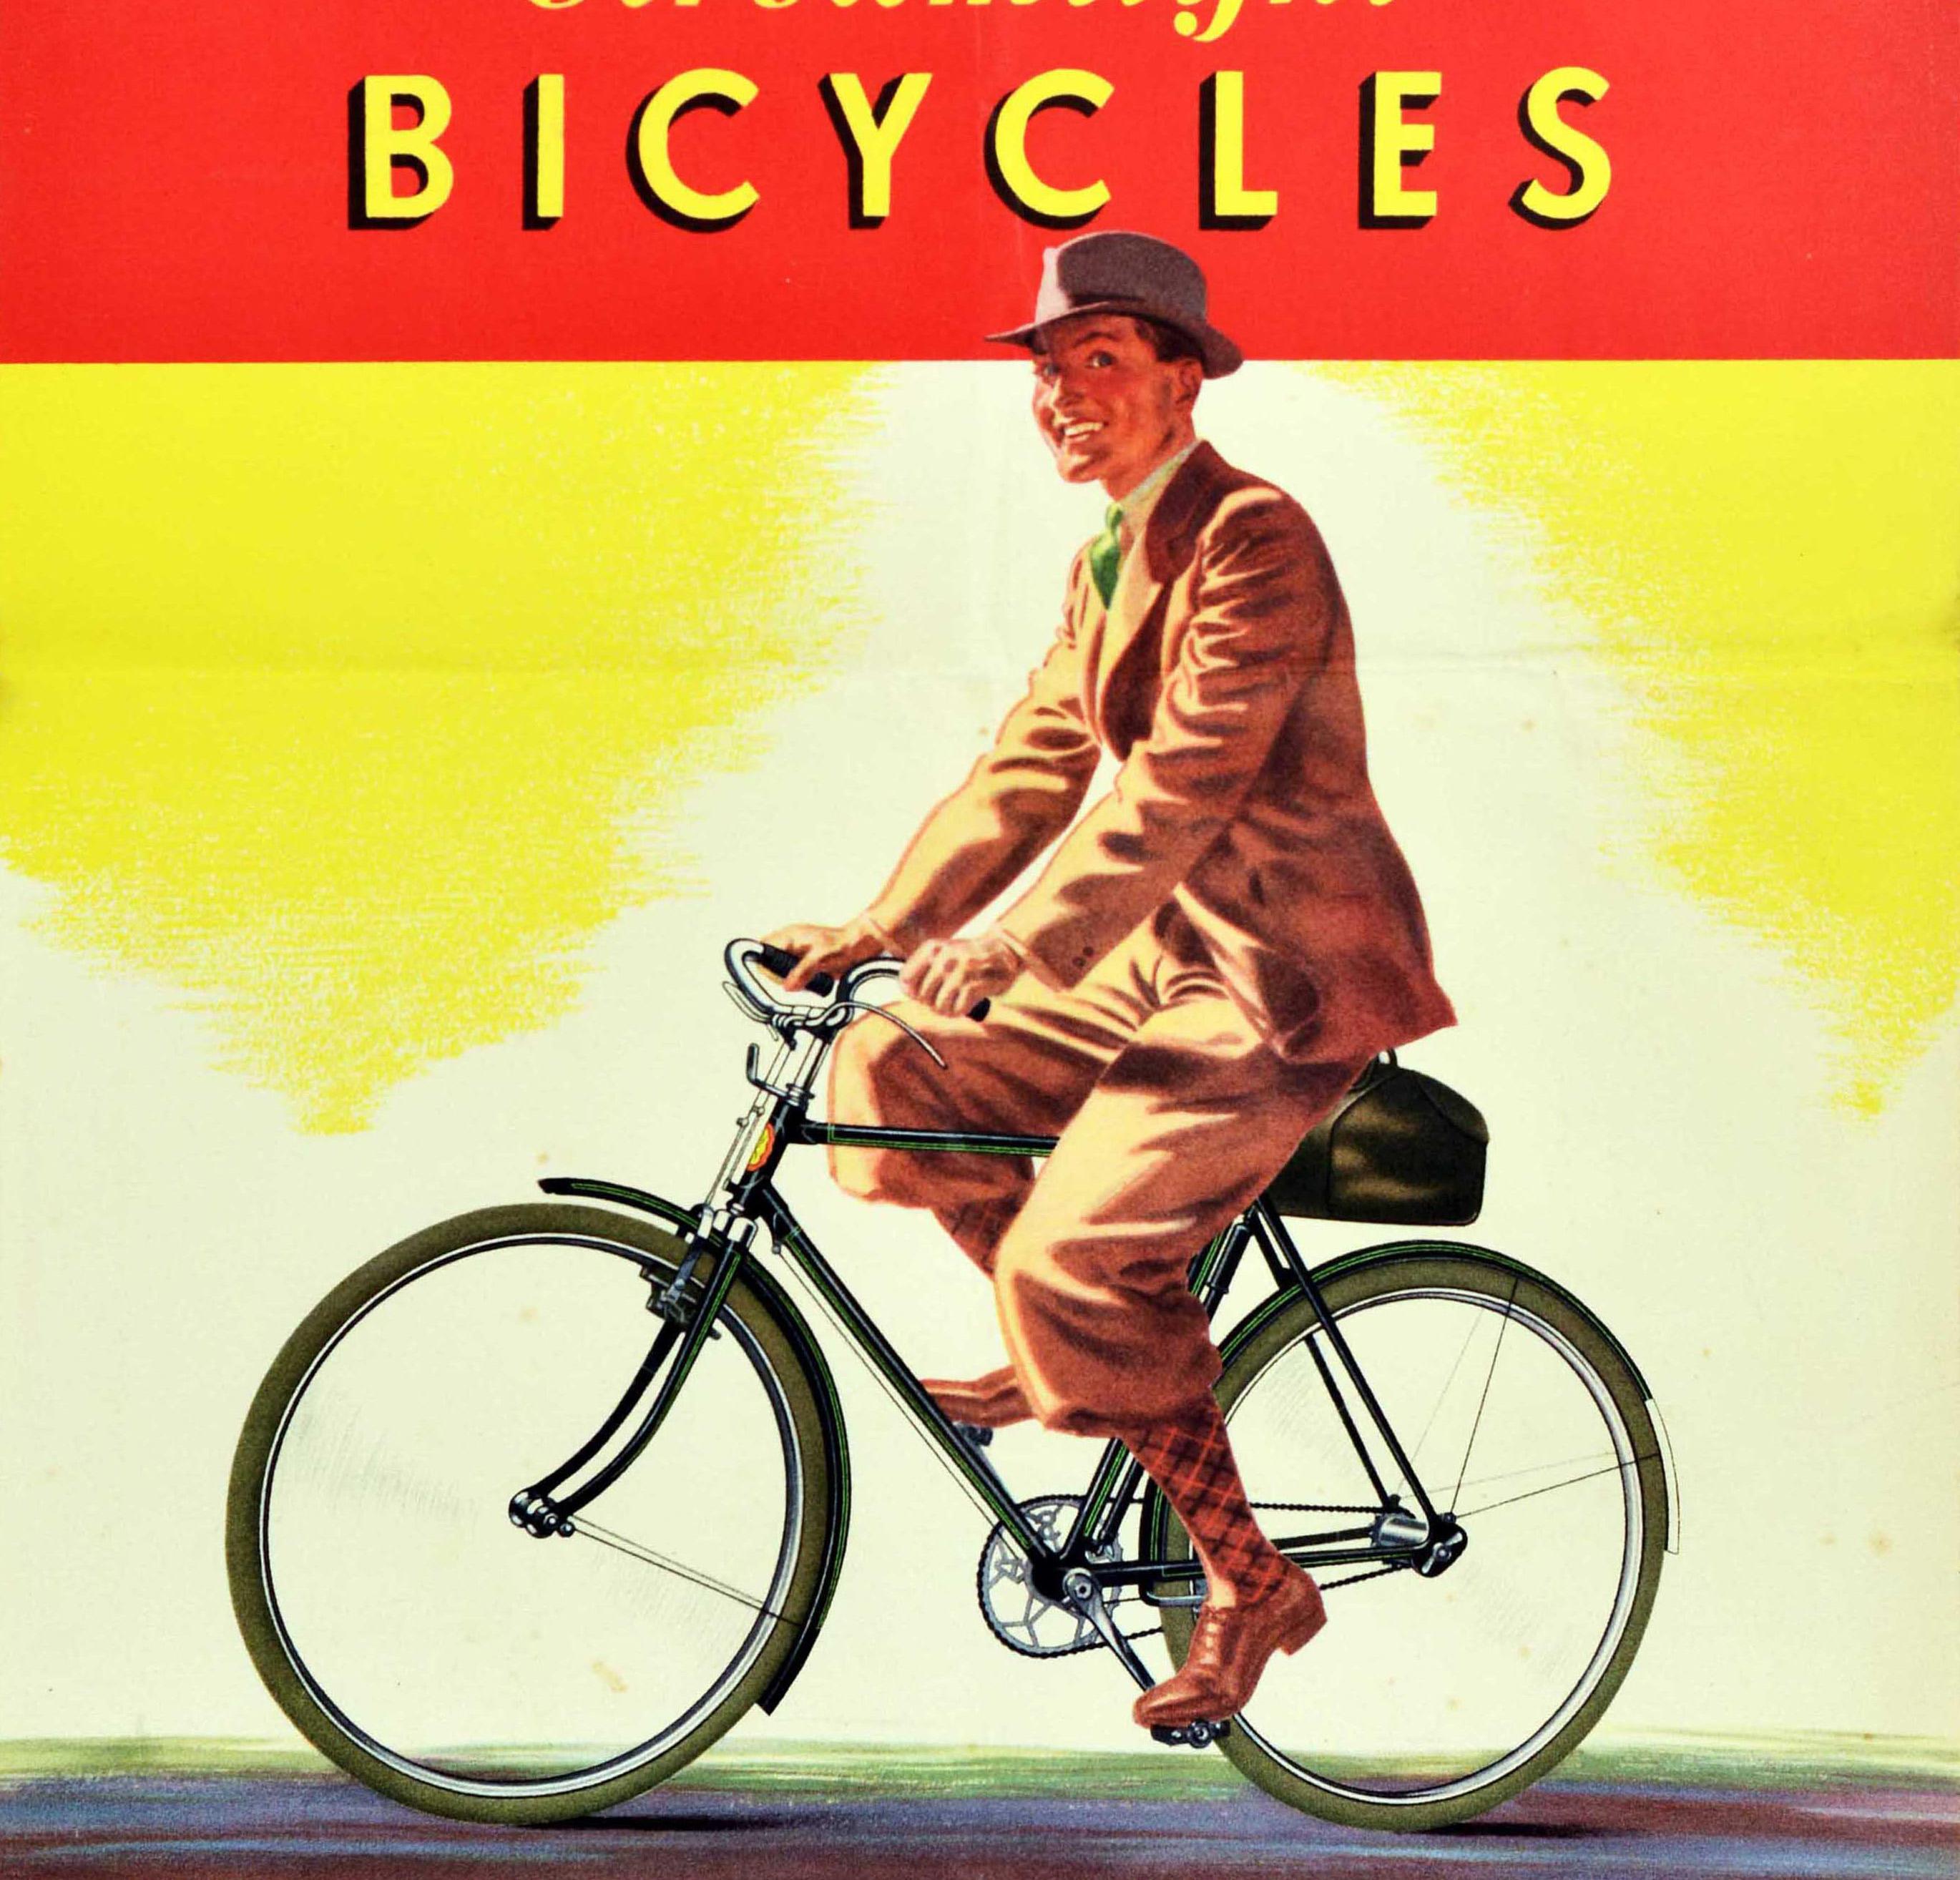 Original-Werbeplakat für BSA Streamlight Bicycles mit einem farbenfrohen Bild eines elegant gekleideten Radfahrers, der den Betrachter anlächelt, während er mit seinem neuen Fahrrad fährt, darunter der Text in fetten gelben Buchstaben auf rotem